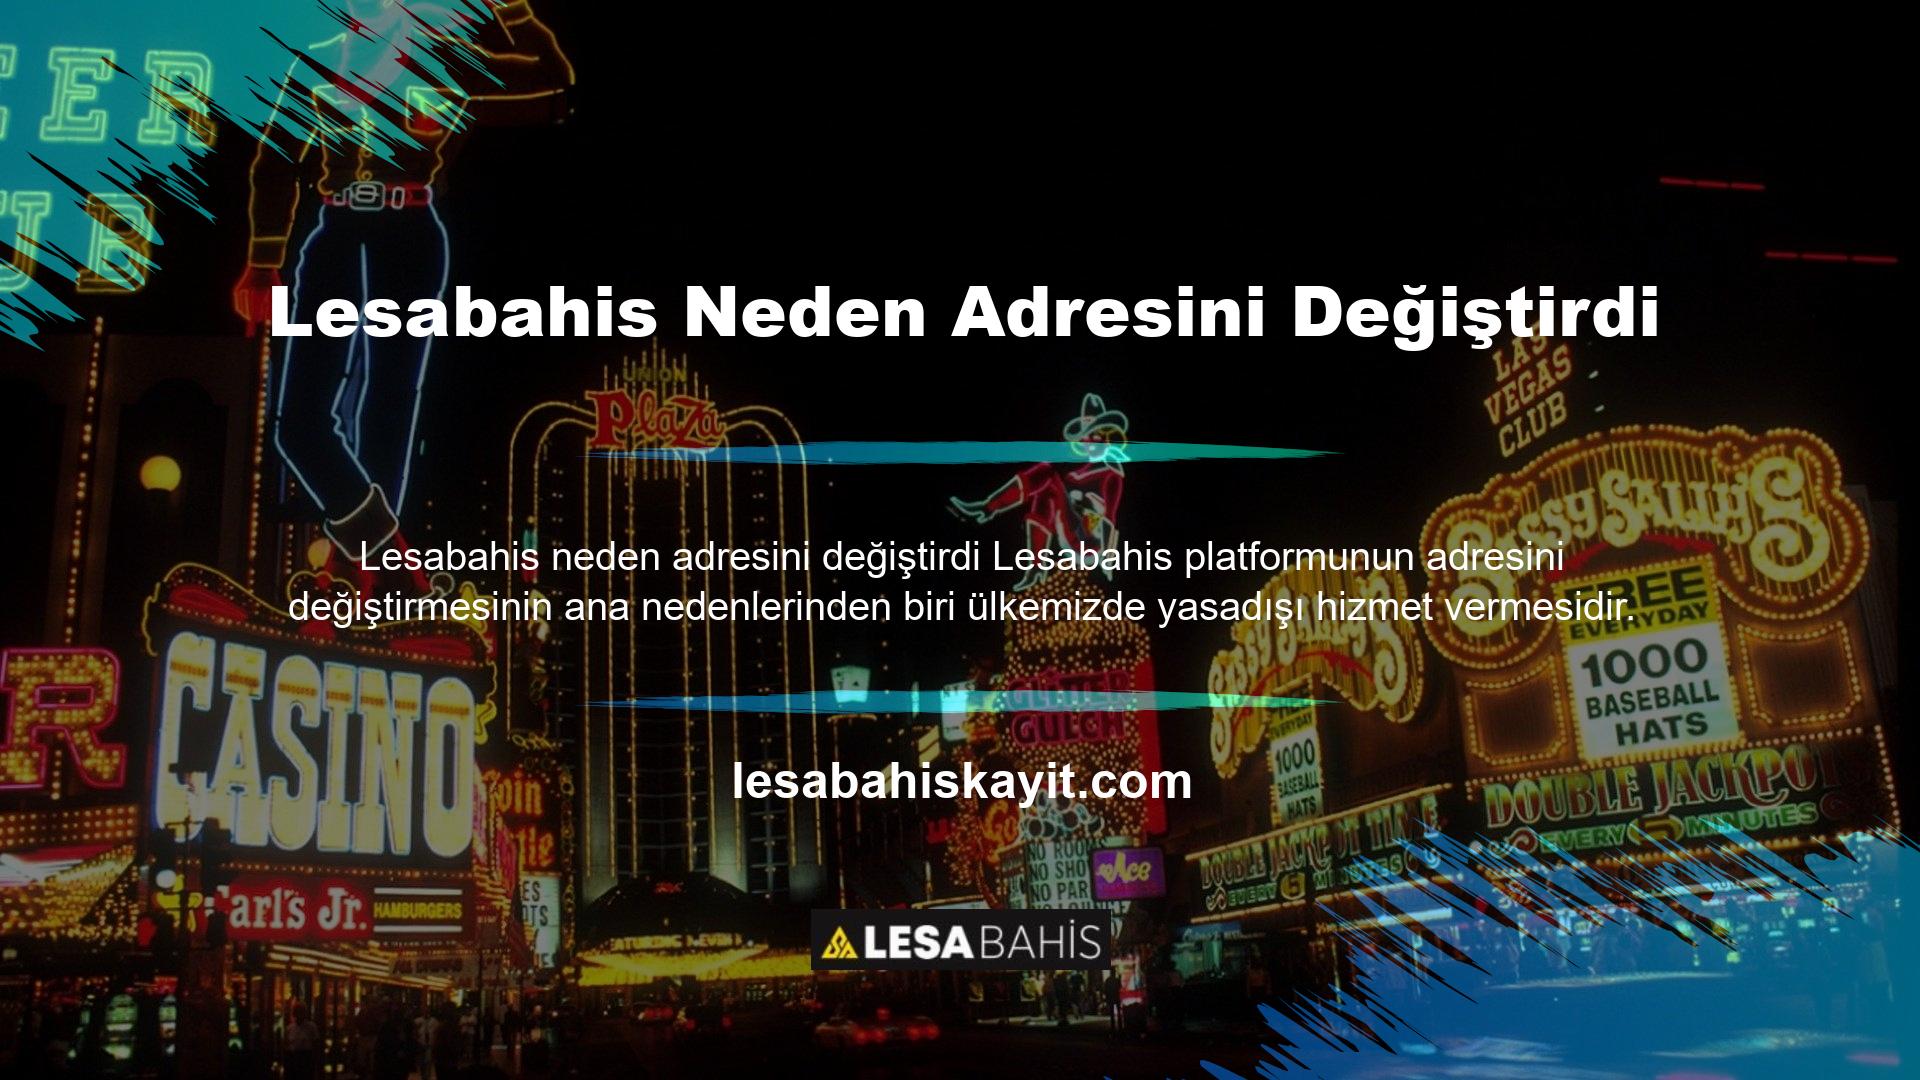 Türkiye'de casino siteleri yasaktır, dolayısıyla yakalanırsanız bu tür yaptırımlara maruz kalırsınız